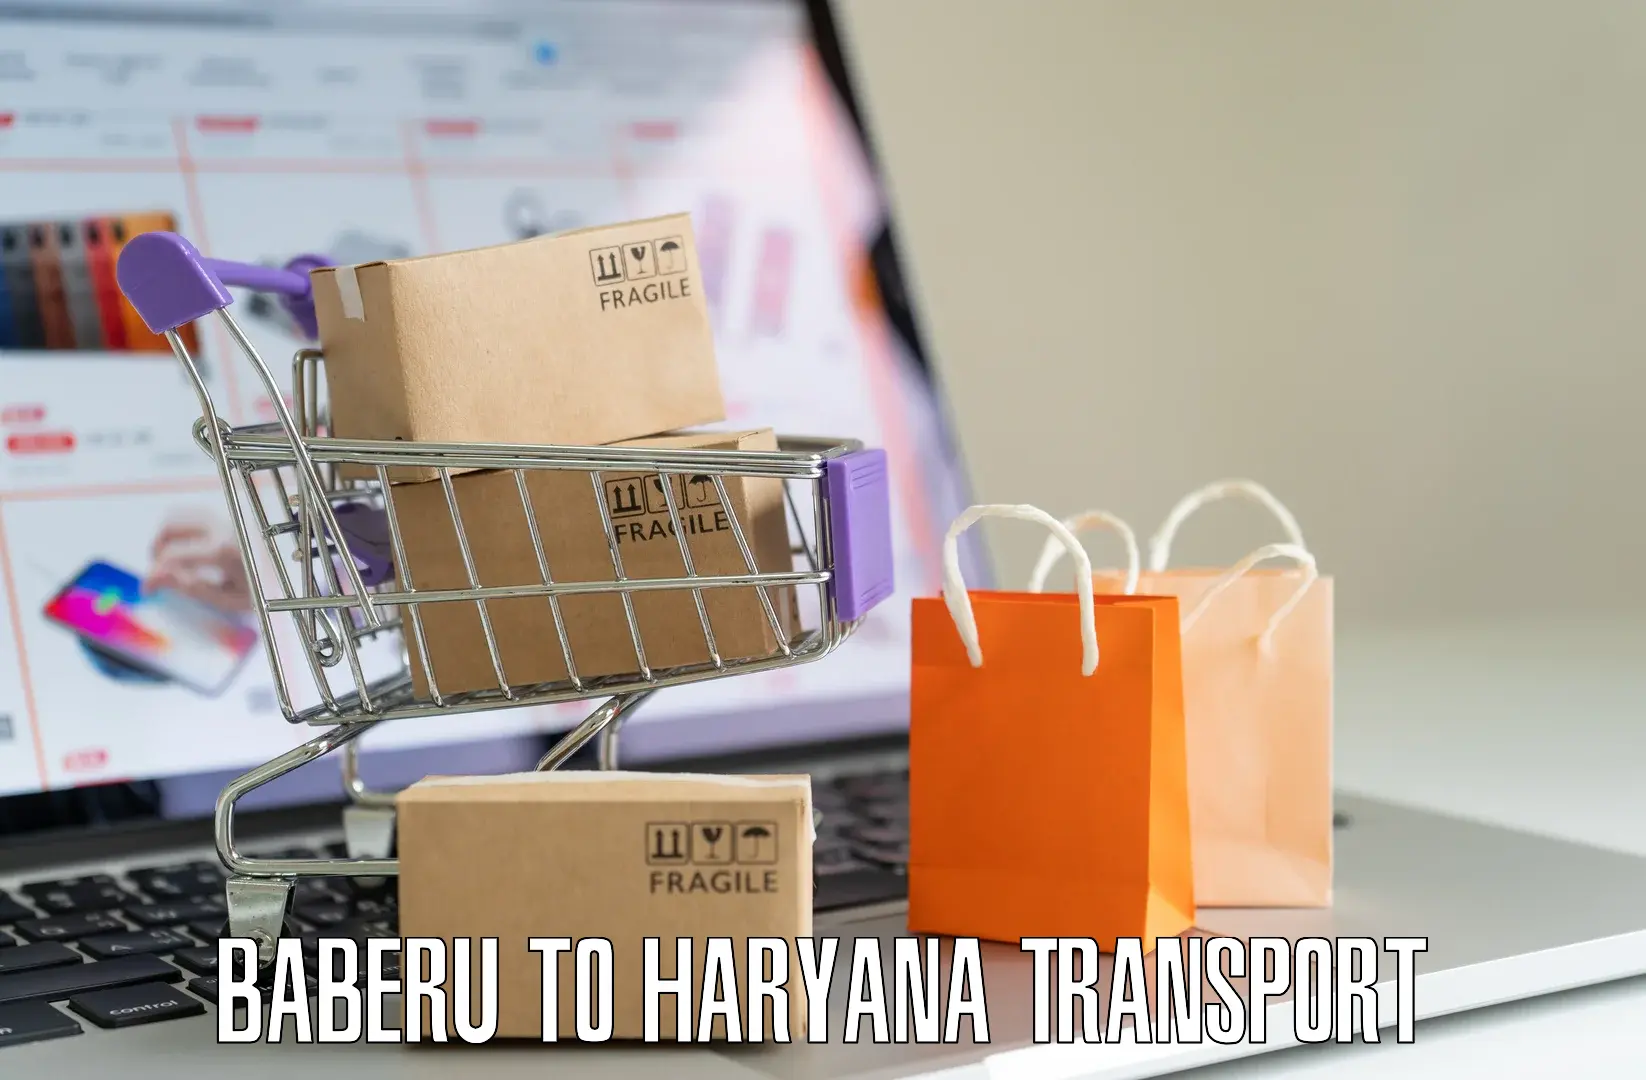 Online transport booking Baberu to Chirya